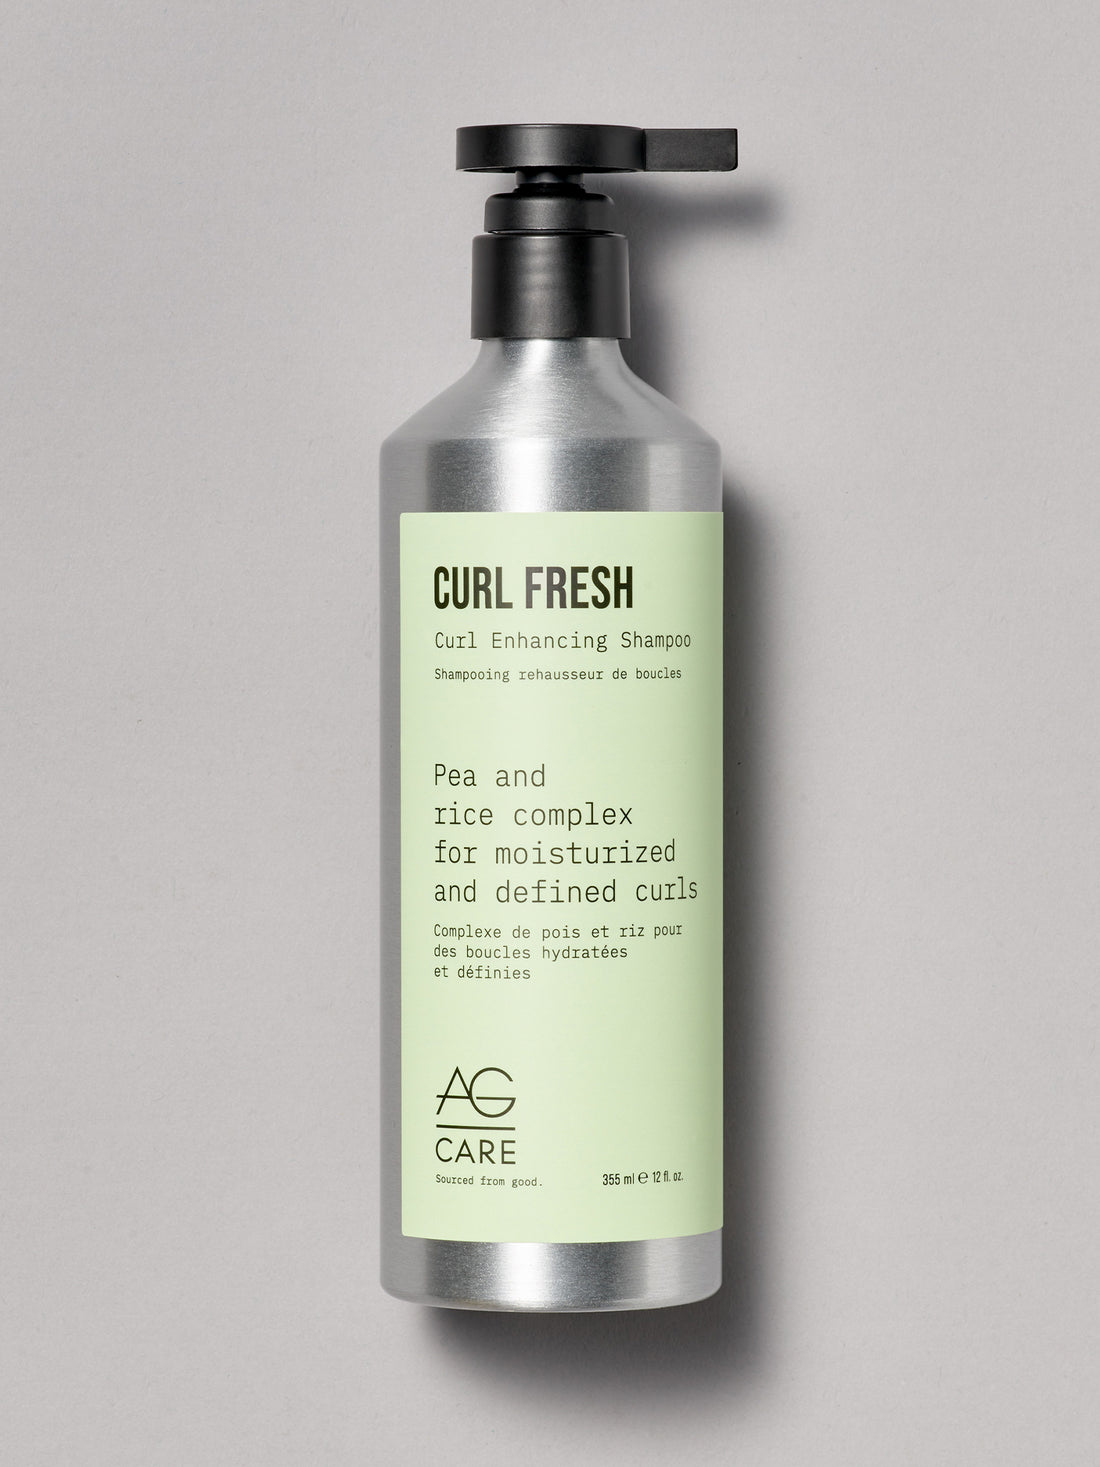 Strædet thong Nervesammenbrud Reduktion AG CURL FRESH: Curl Enhancing Sulfate-Free Shampoo – AG Care